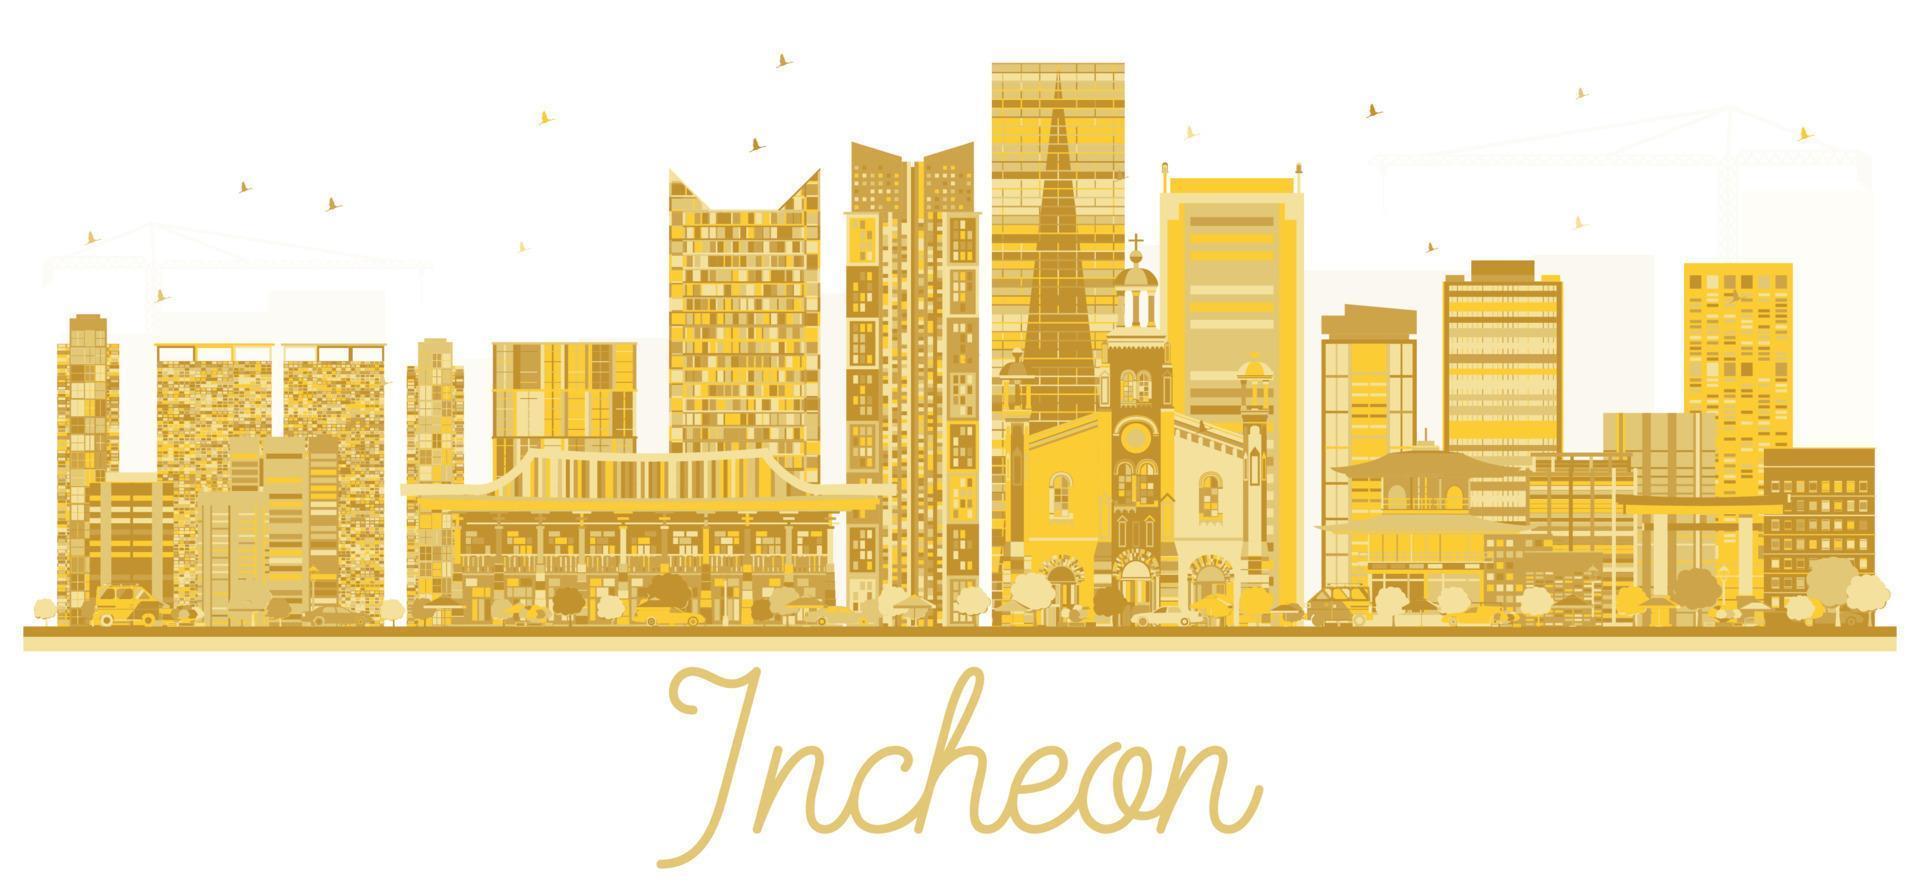 goldene silhouette der skyline der stadt incheon. vektor